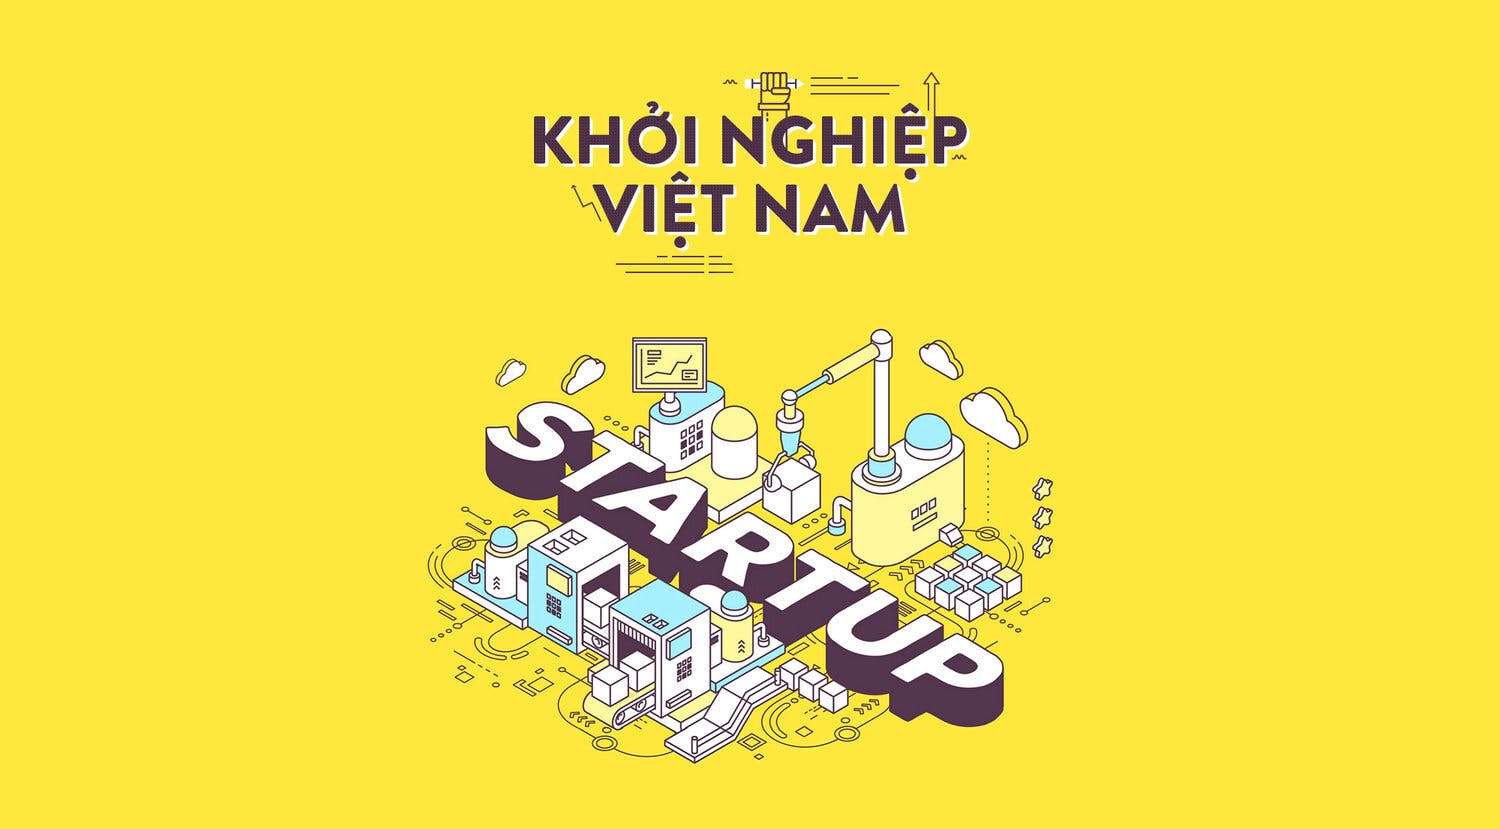 Gặp gỡ 15 công ty khởi nghiệp và công ty công nghệ được tài trợ hàng đầu tại Việt Nam